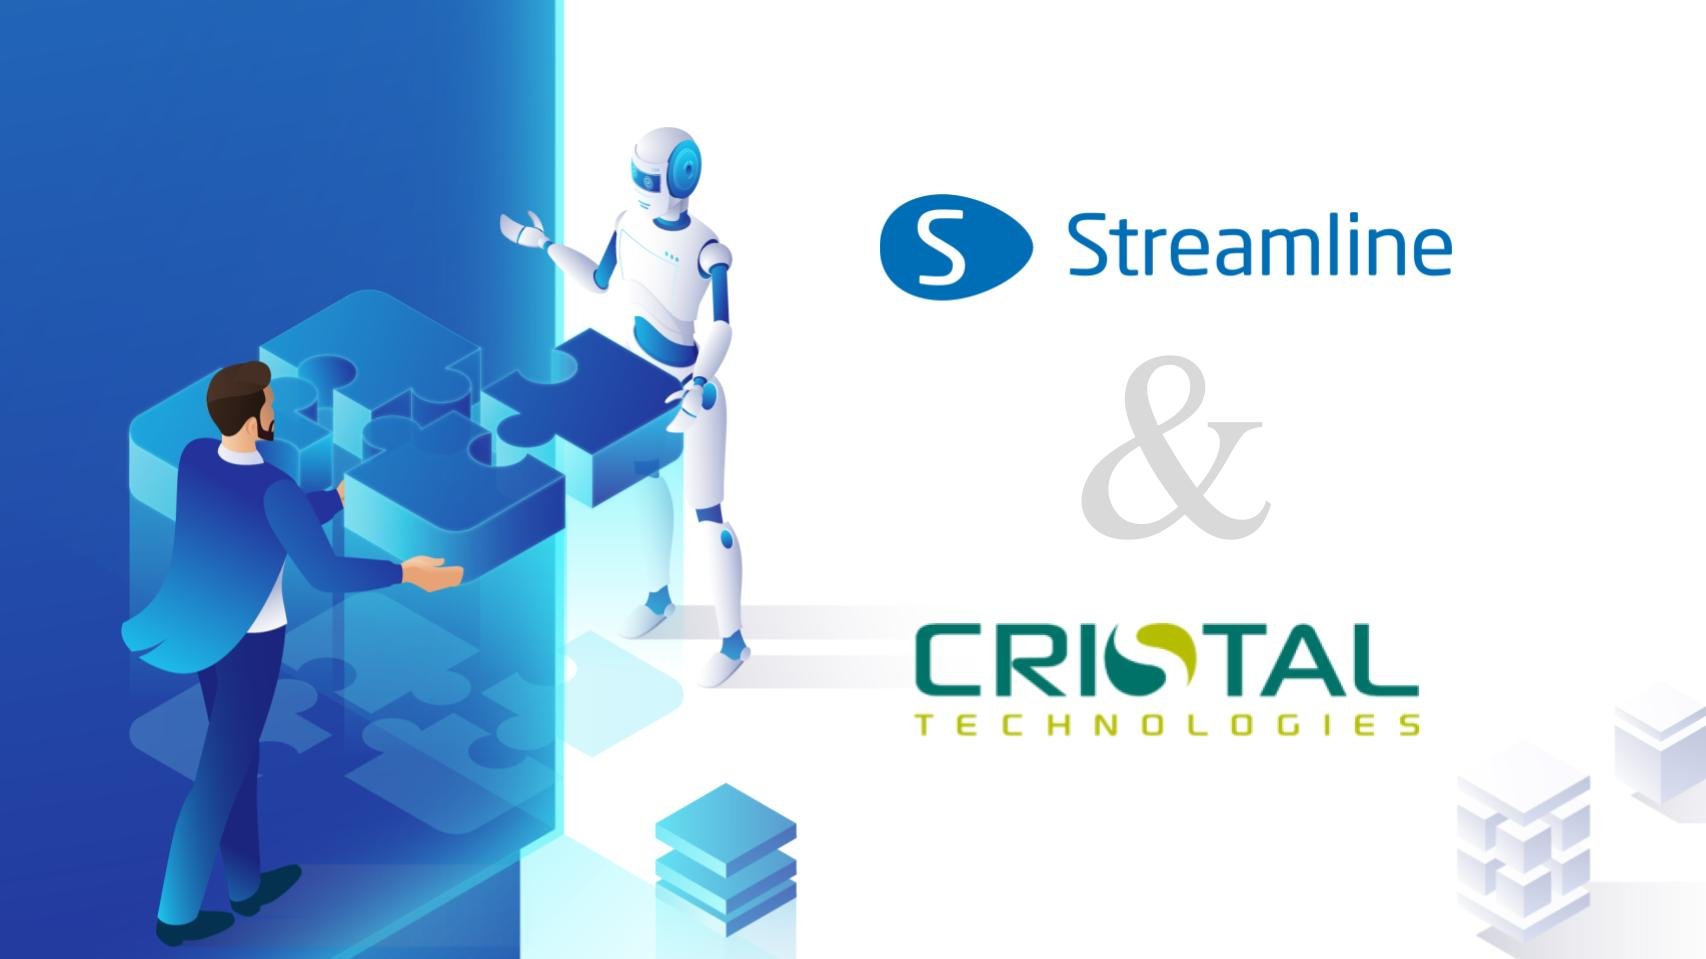 أعلنت كل من GMDH Streamline و Cristal Technologies عن شراكة إستراتيجية